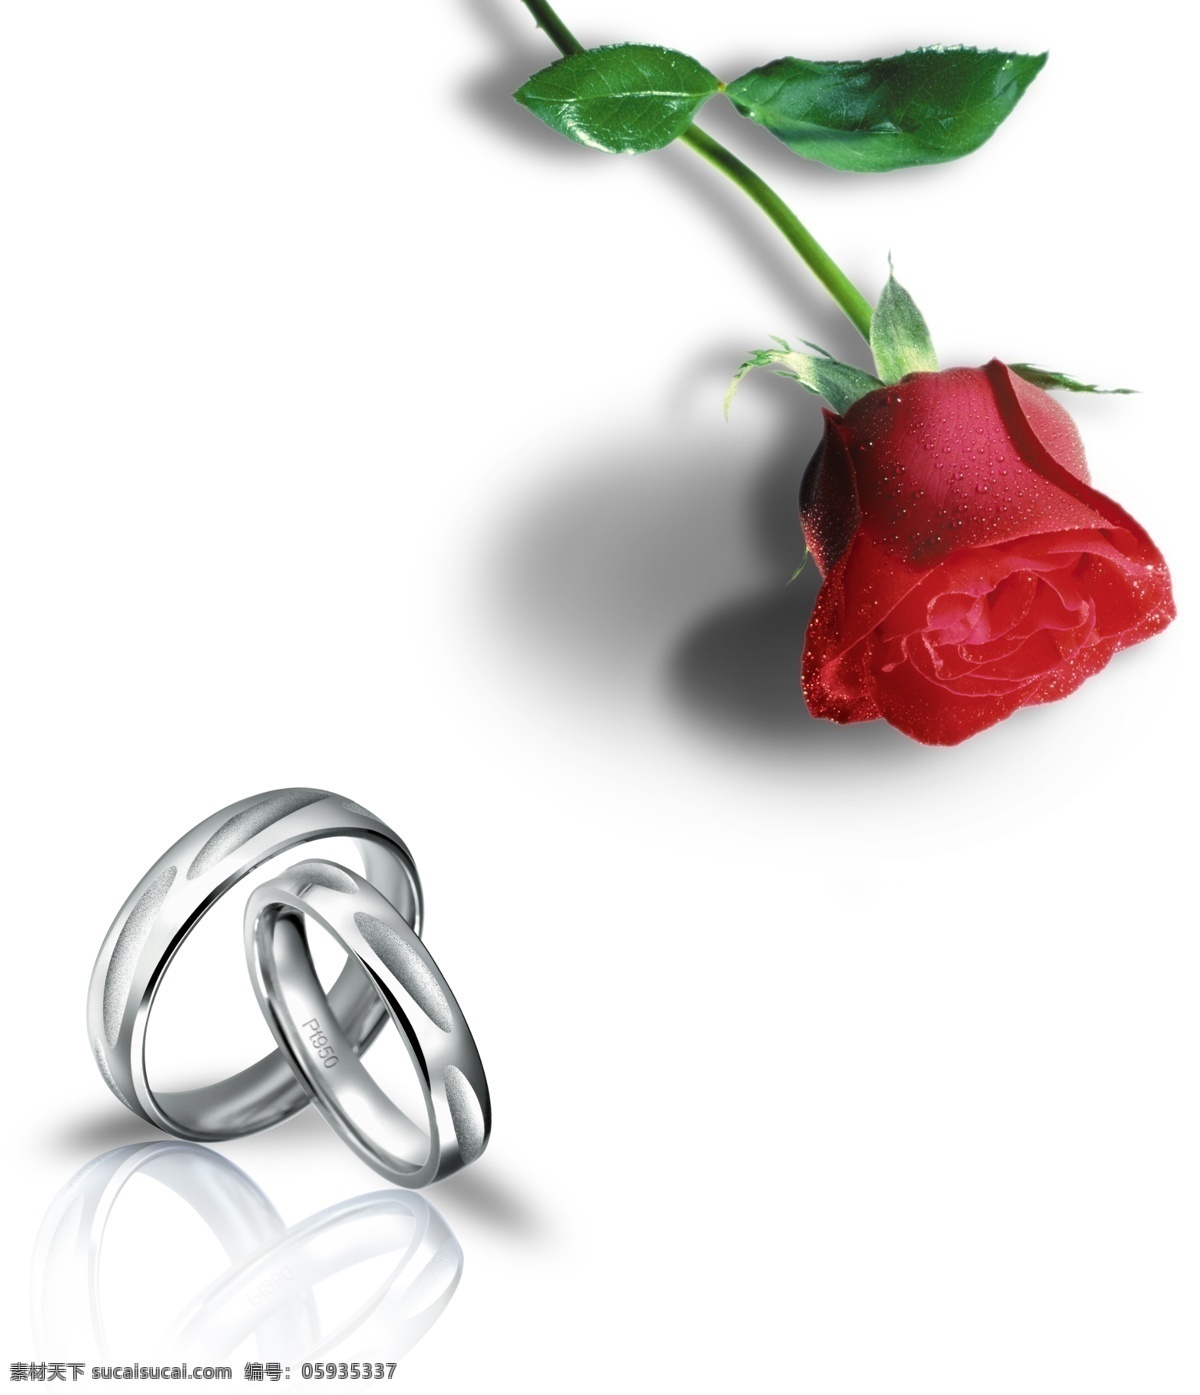 一生 相伴 白金 戒 模版下载 珠宝广告 白金戒指 结婚对戒 爱情玫瑰 广告设计模板 源文件